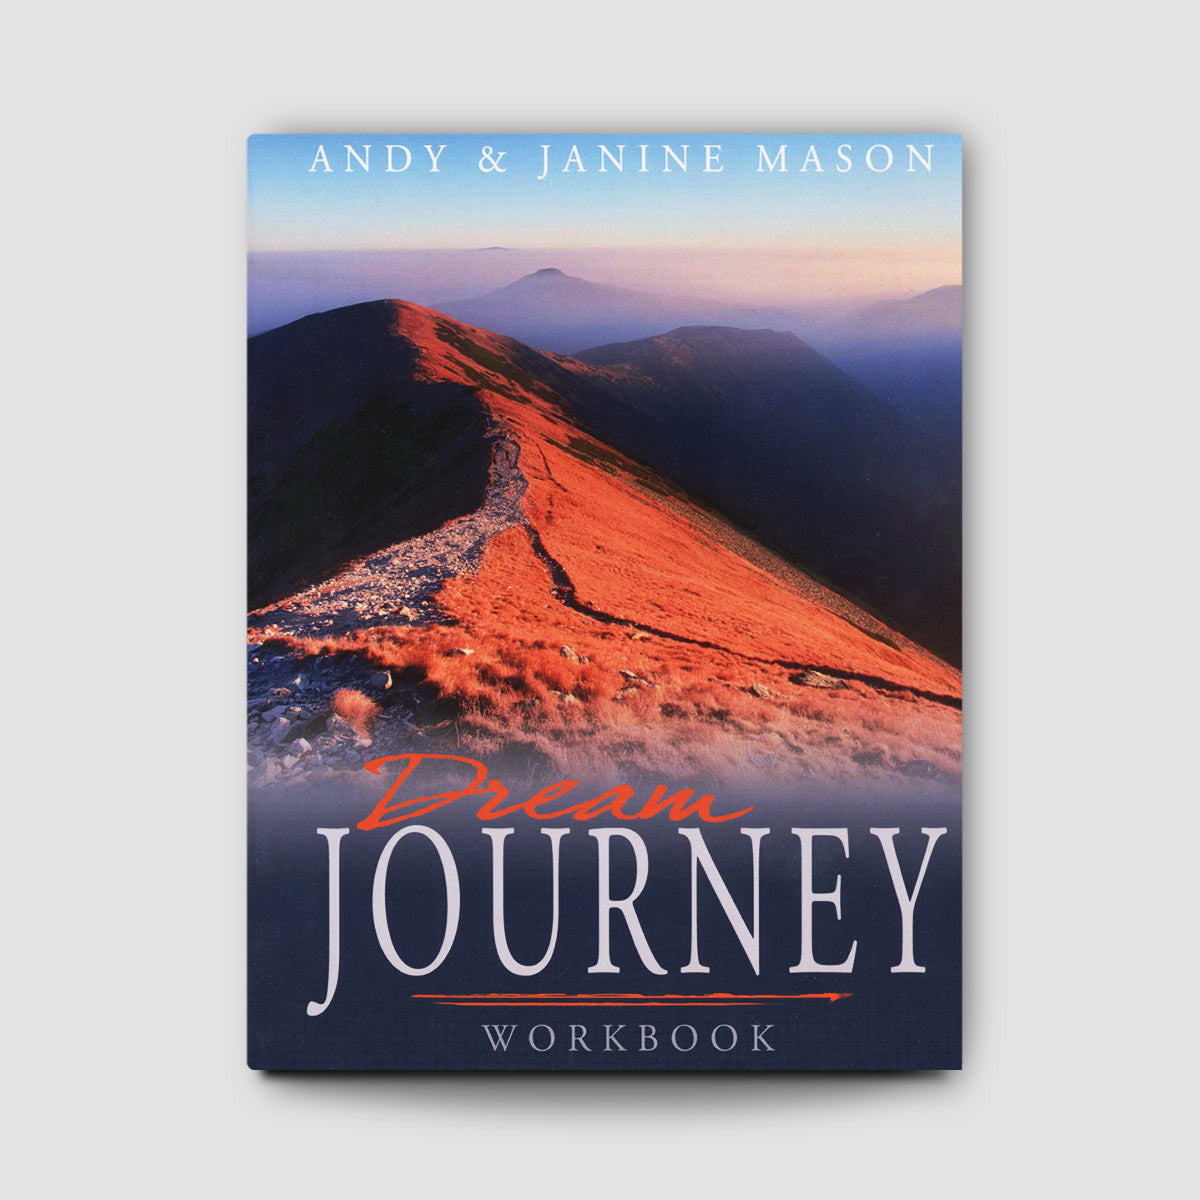 Dream Journey Workbook